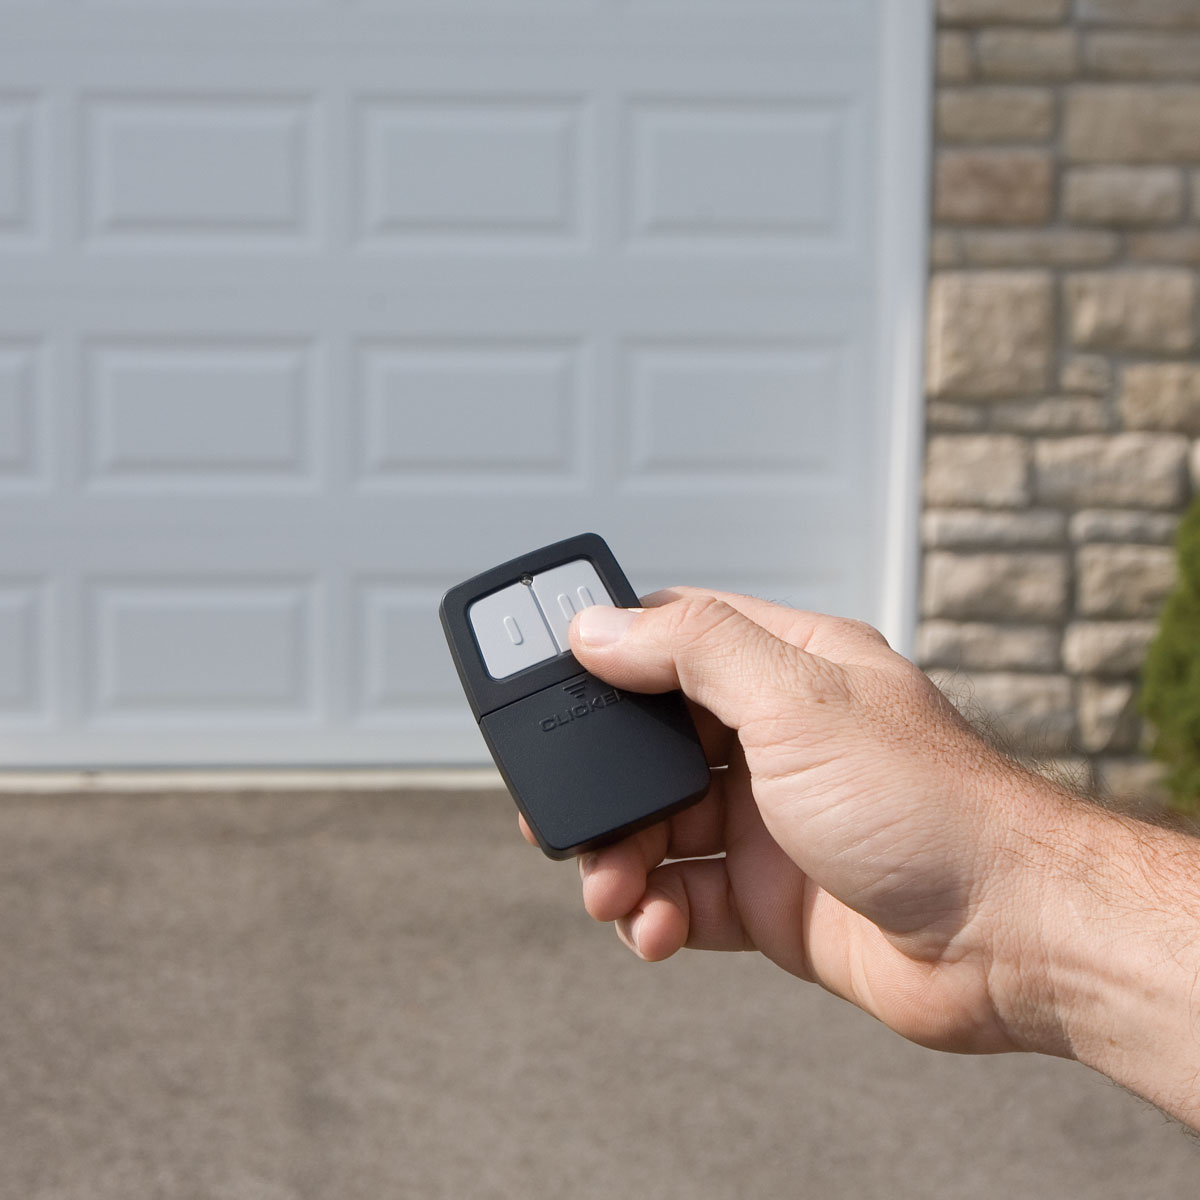 How To Get A New Garage Door Remote